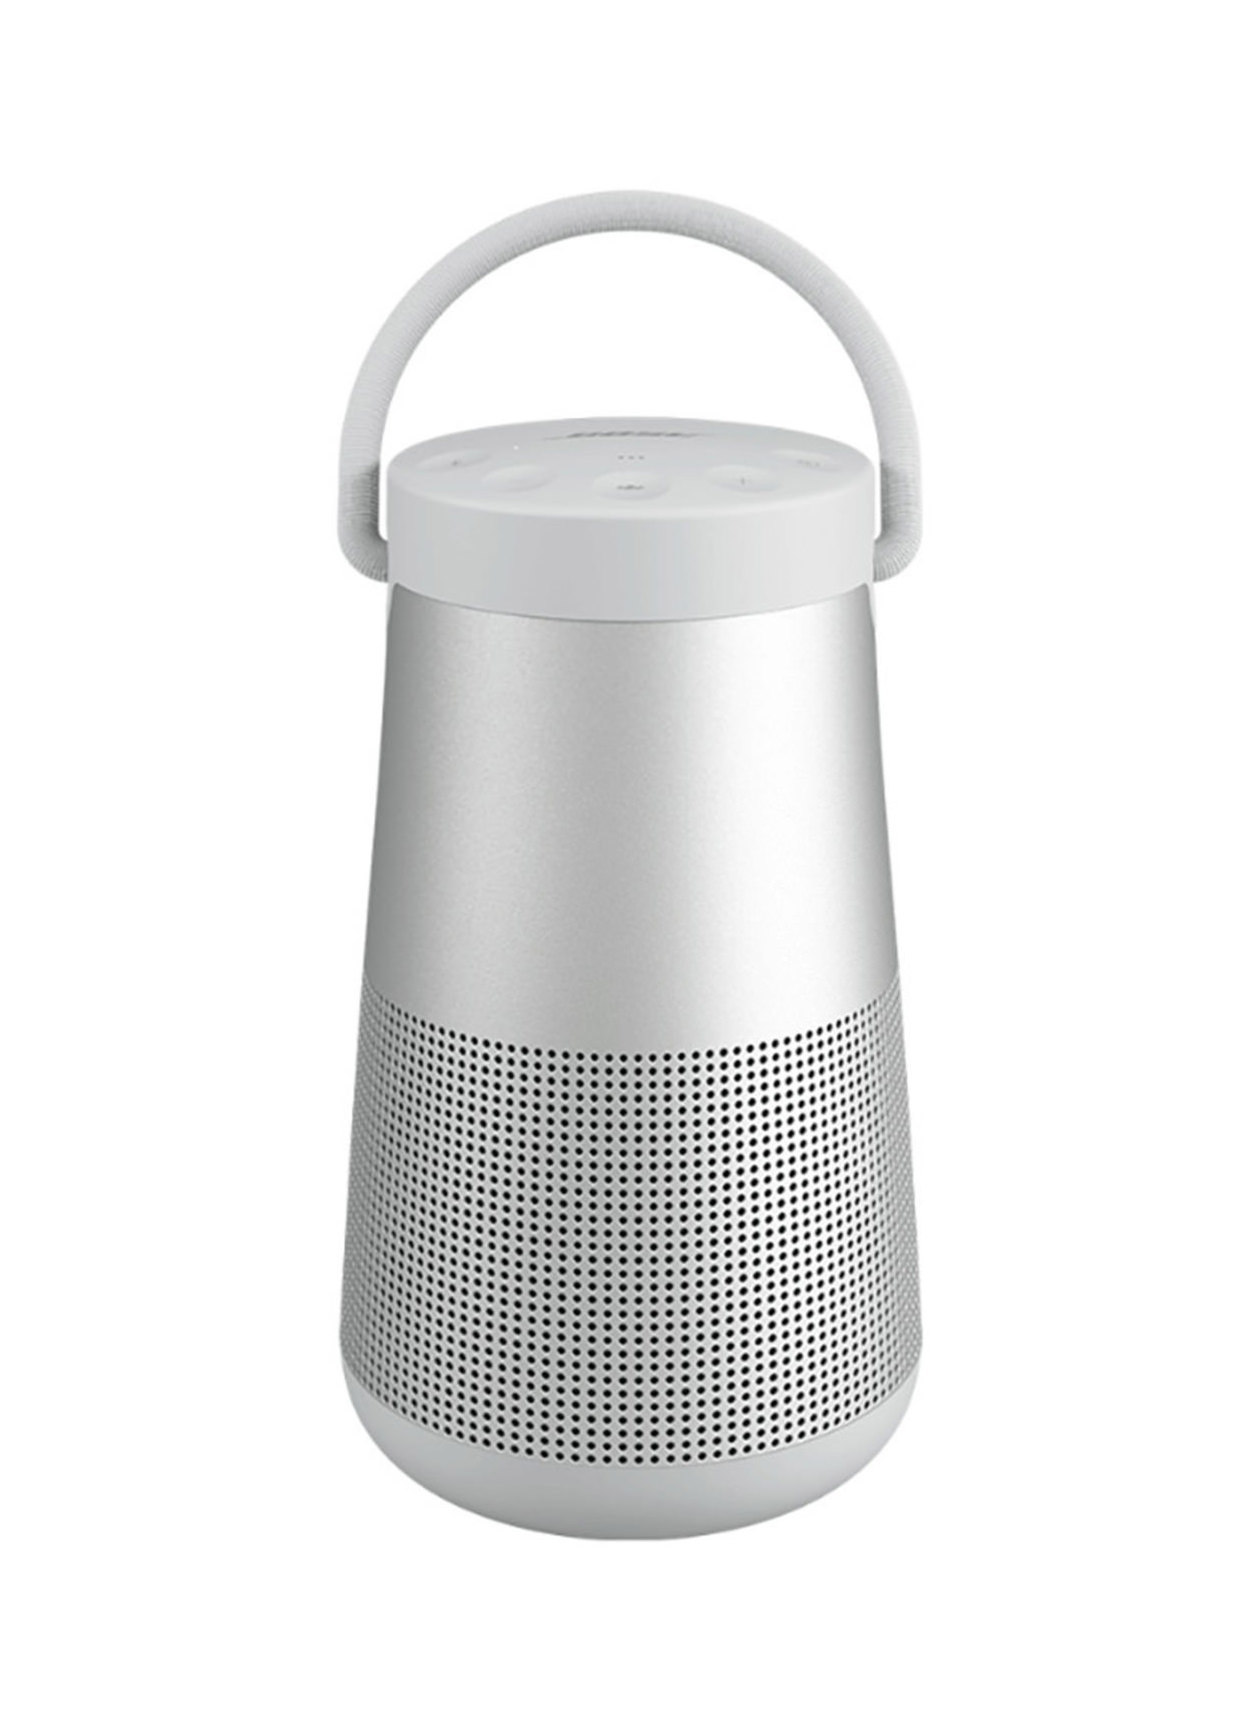 Bose Triple Silver SoundLink Revolve + II Bluetooth speaker